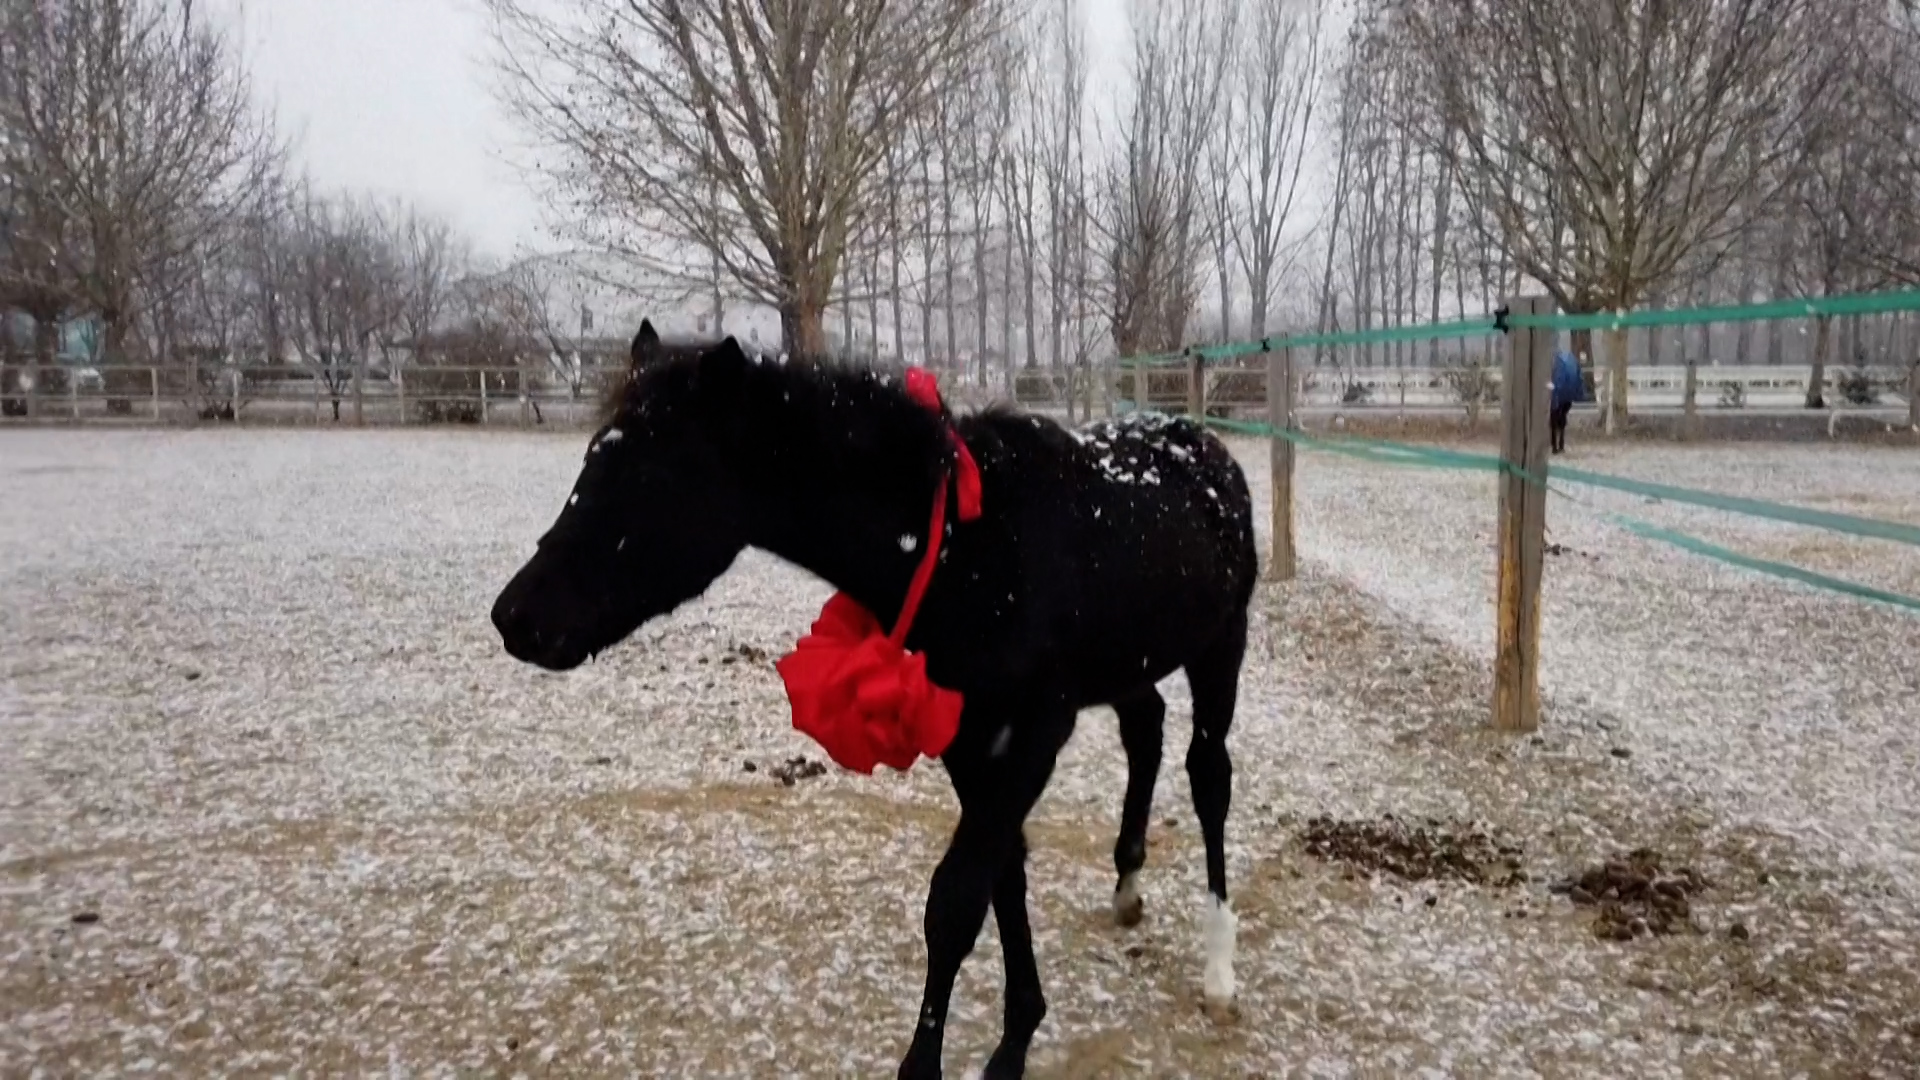 Το κλωνοποιημένο άλογο που δημιουργεί ελπίδες για τον ιππικό αθλητισμό στην Κίνα (video)